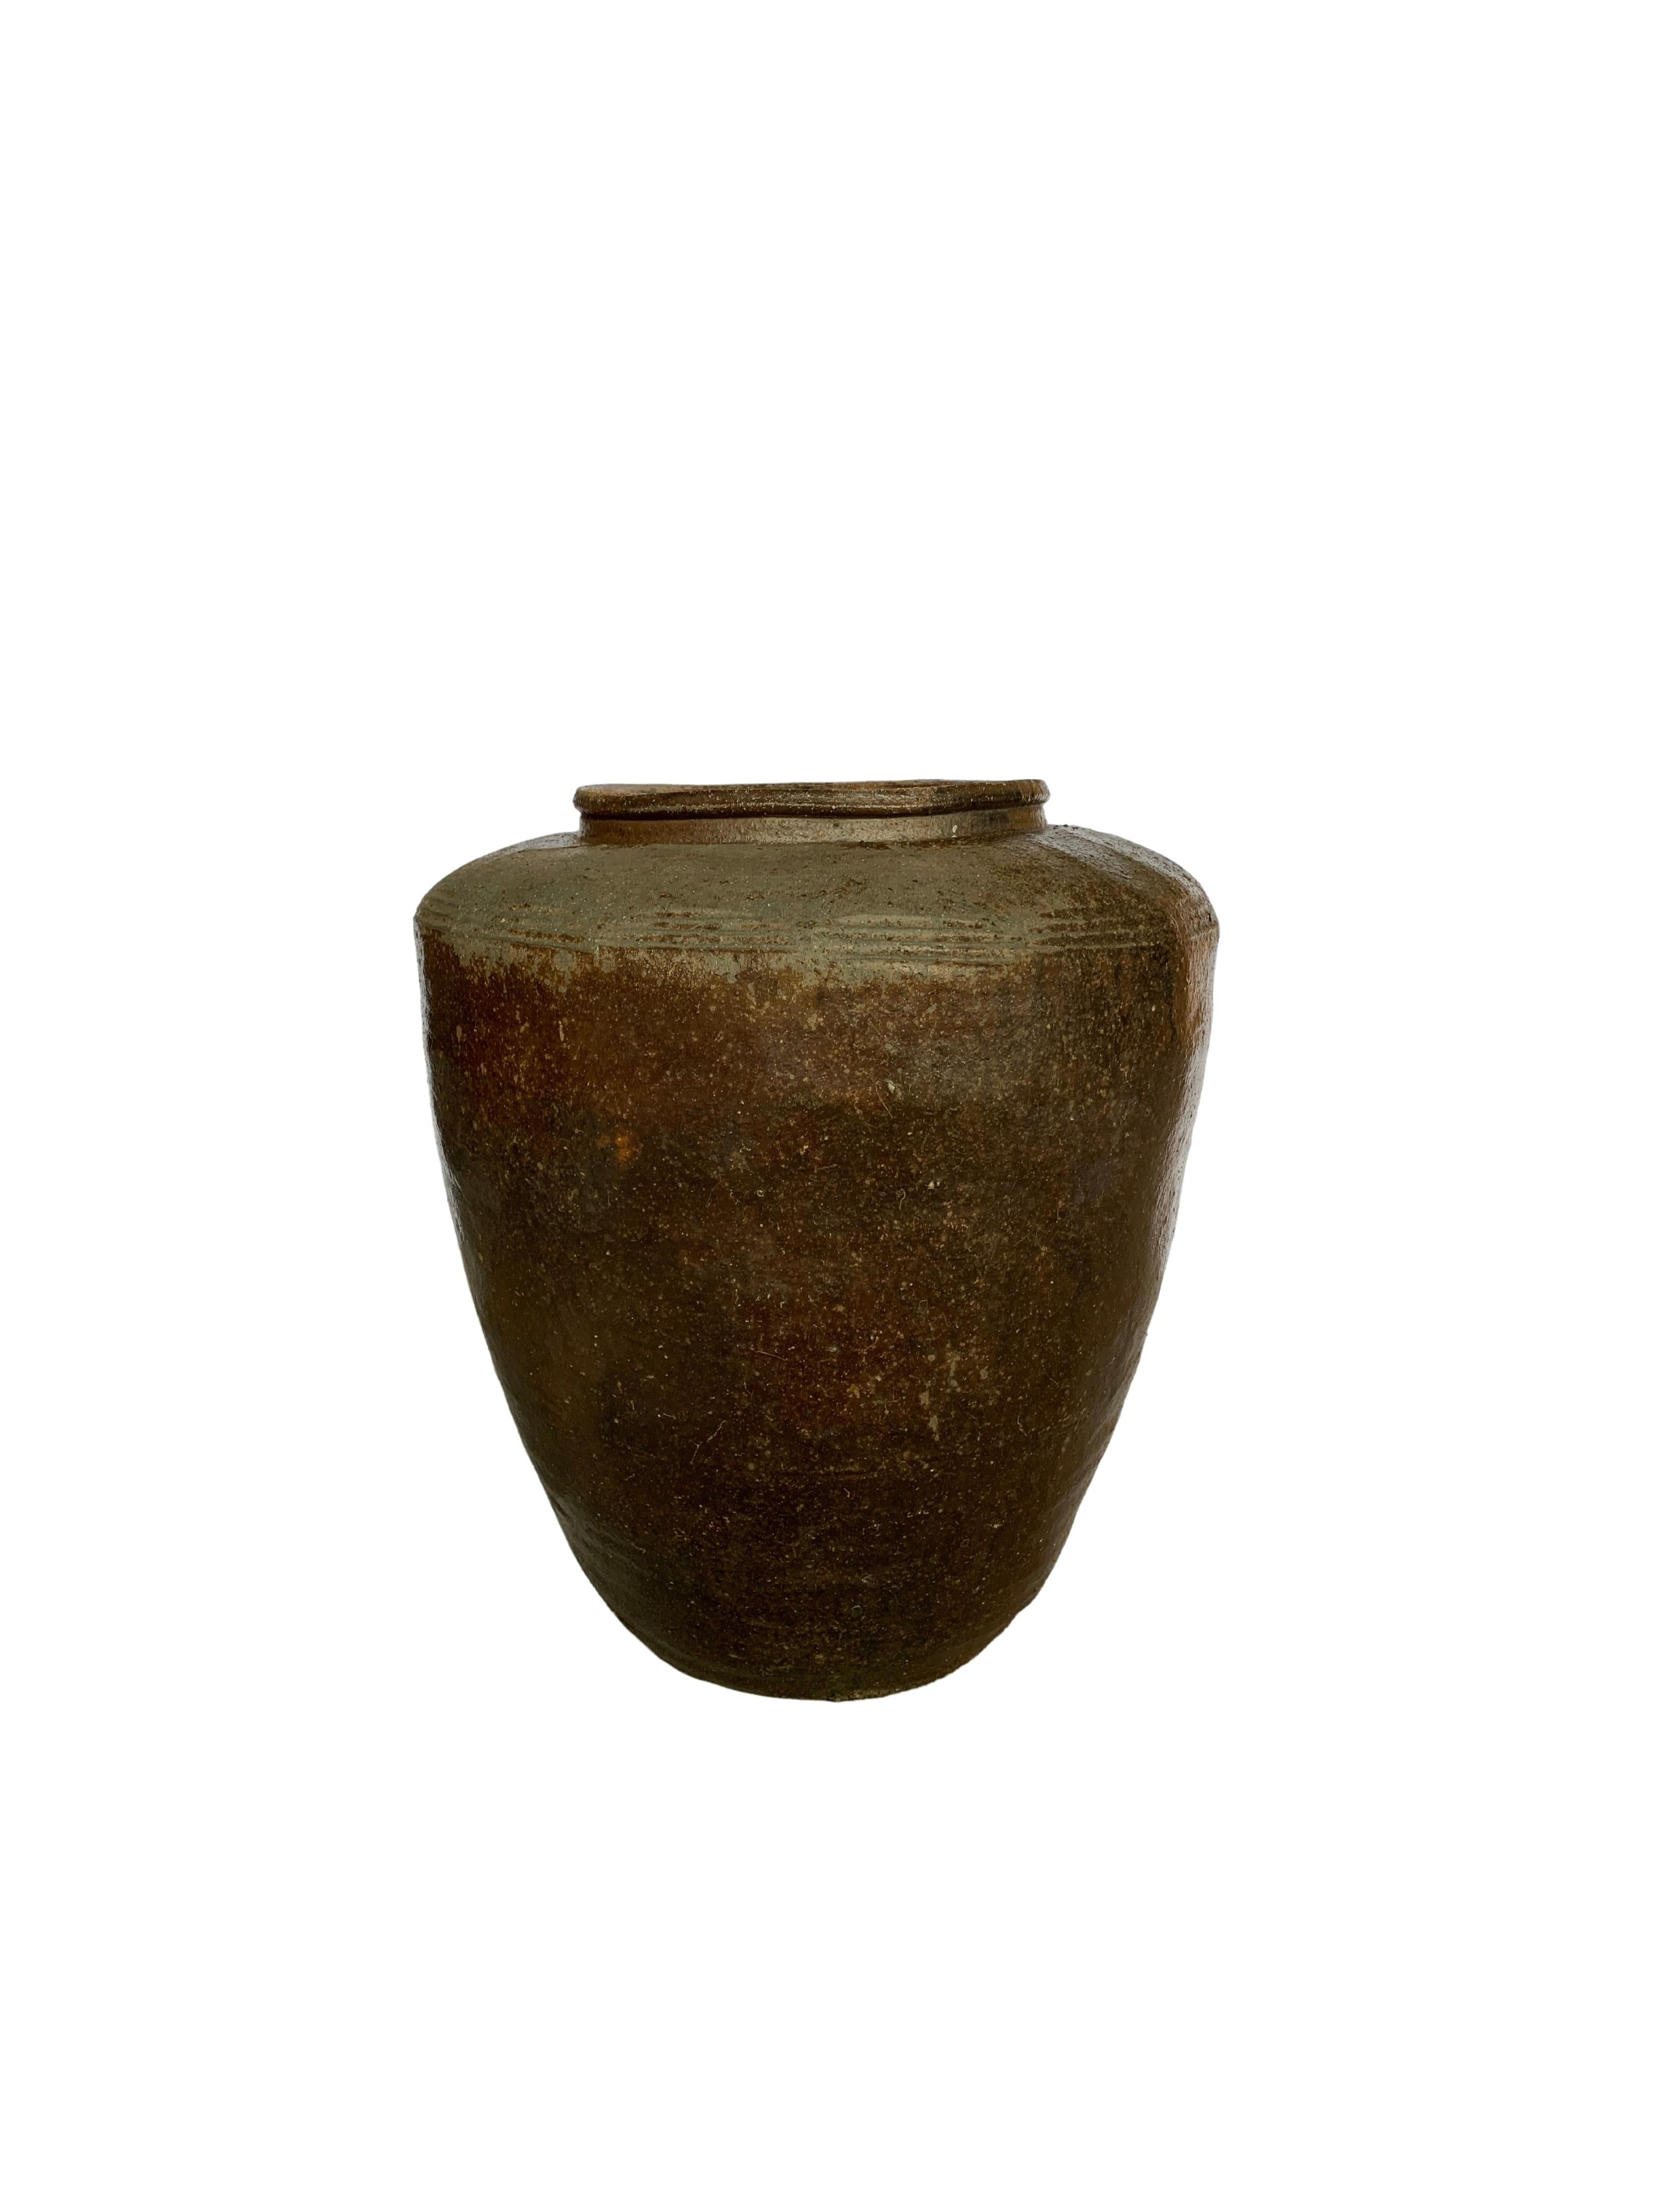 Antique Chinese Brown & Black Glazed Ceramic Salty Egg Jar, c. 1900 For Sale 2